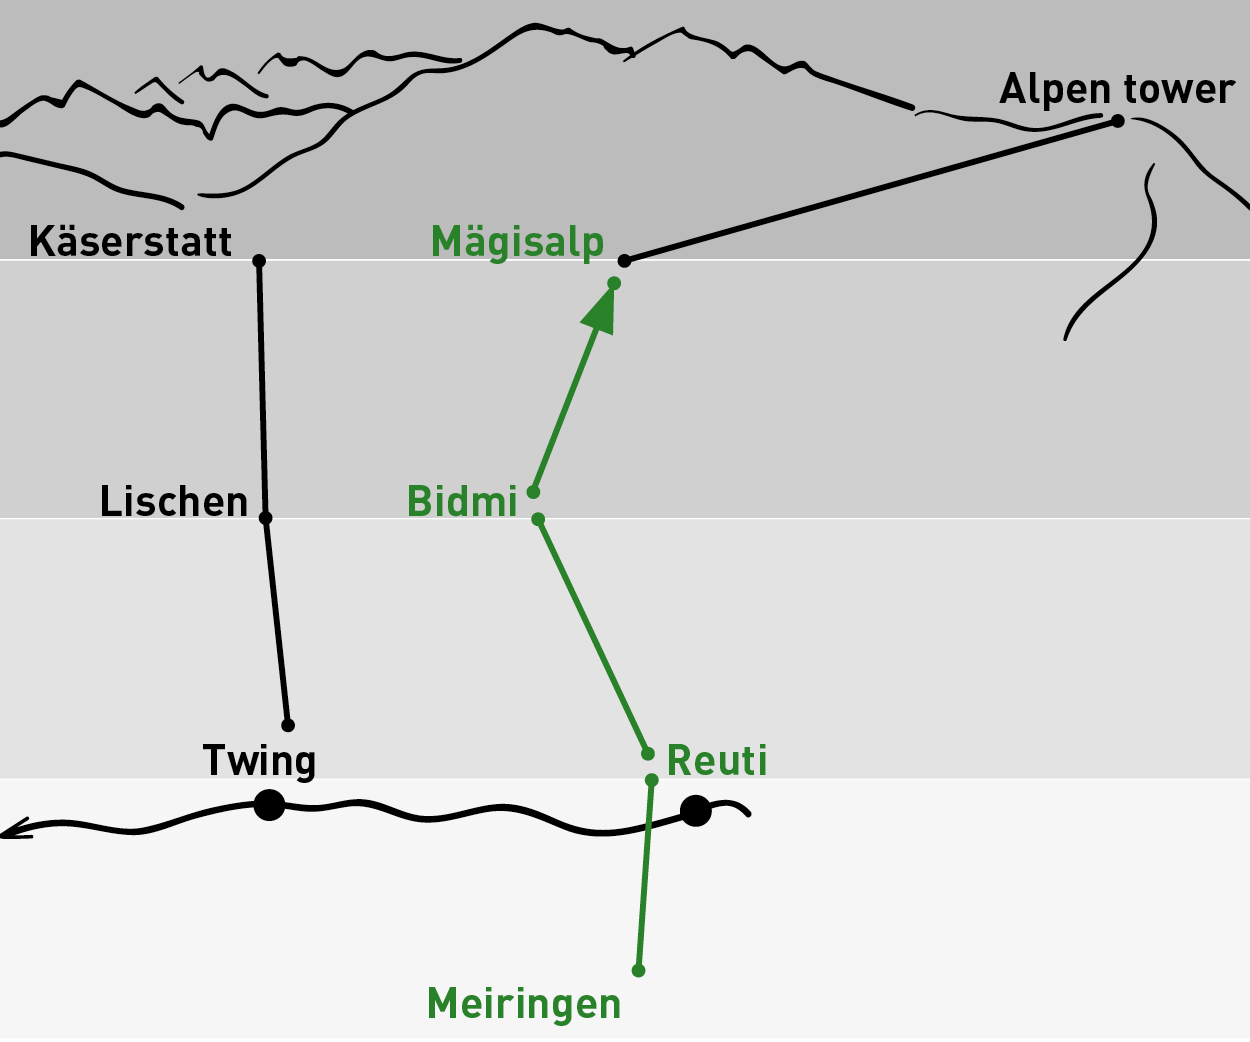 Meiringen – Mägisalp | Einfache Fahrt